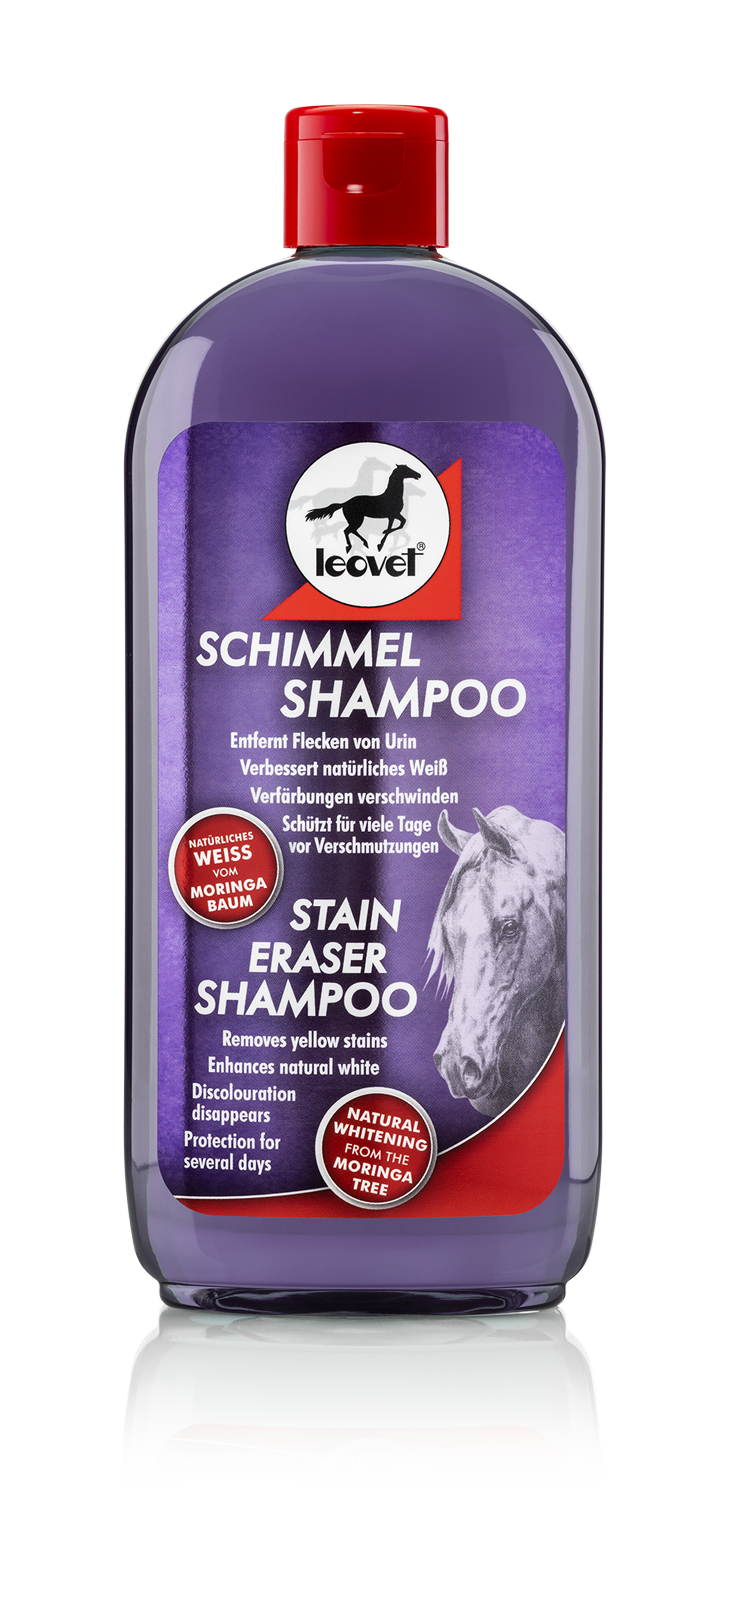 LV shampo for hvite hester